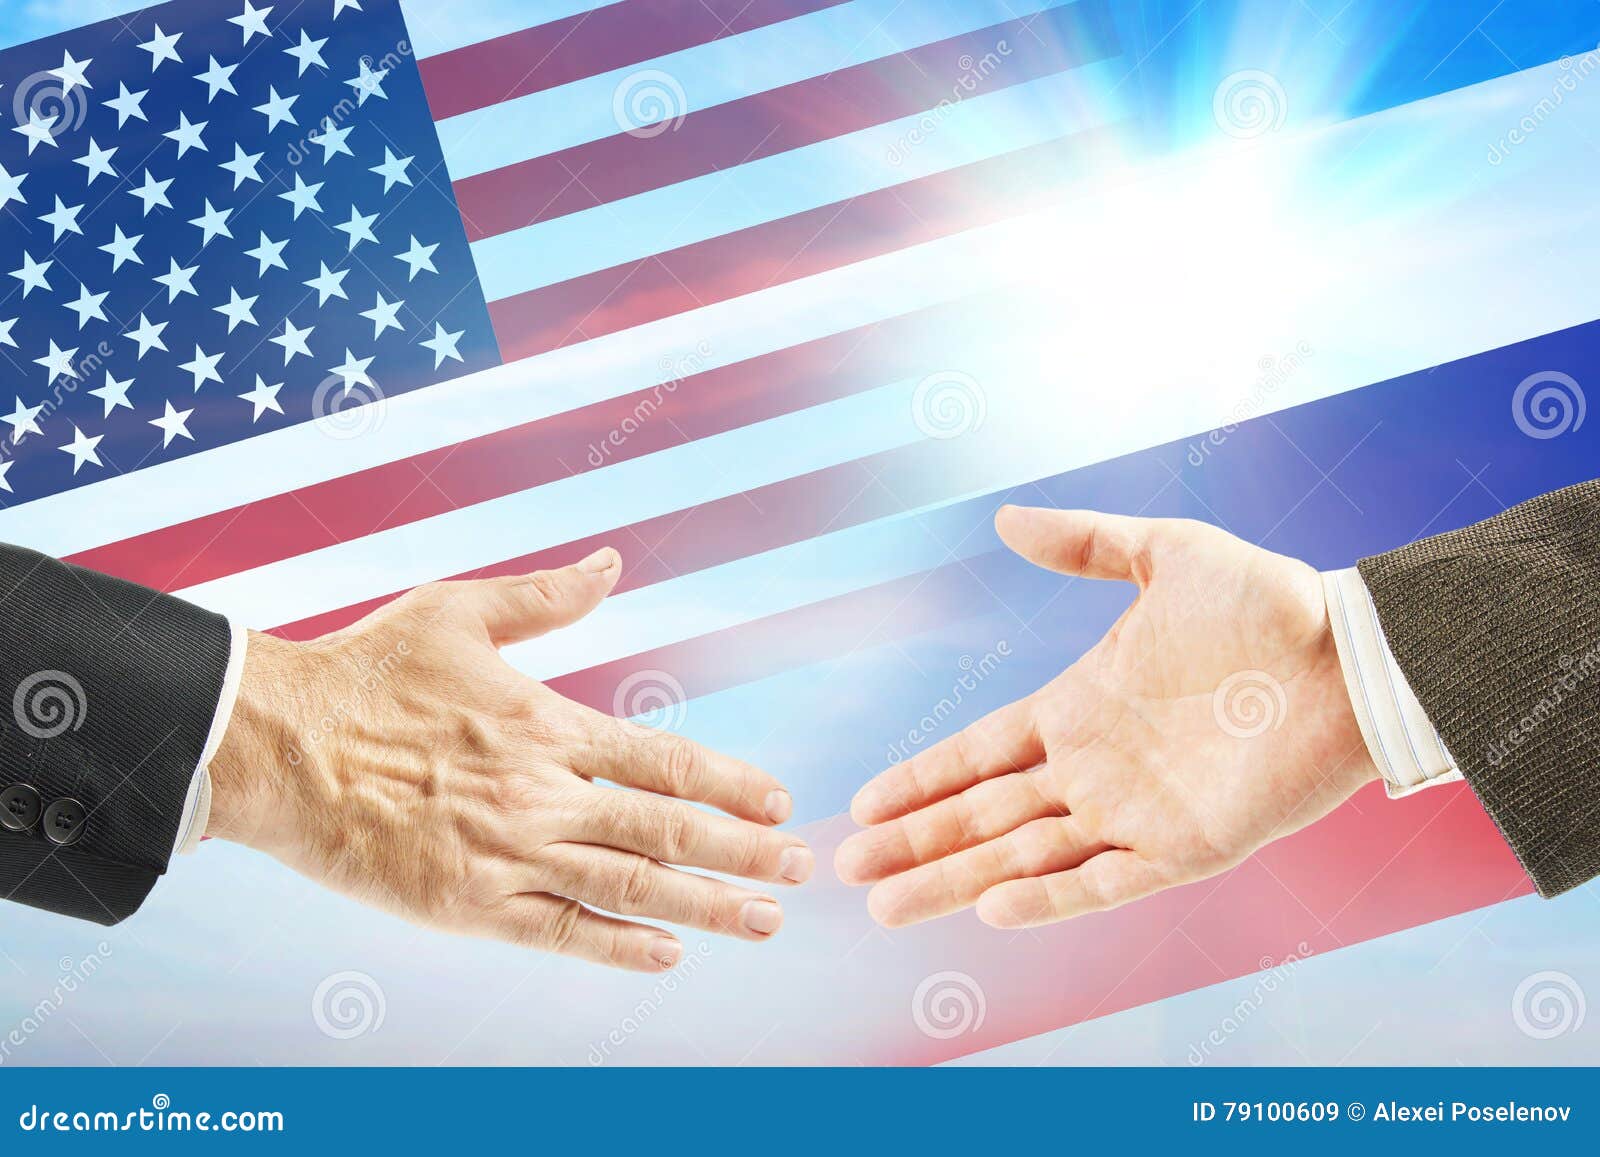 Дружественные отношения между странами. Америка и Россия друзья. Дружественные политические отношения. Дружелюбная Америка и Россия. Друзья США И мир.